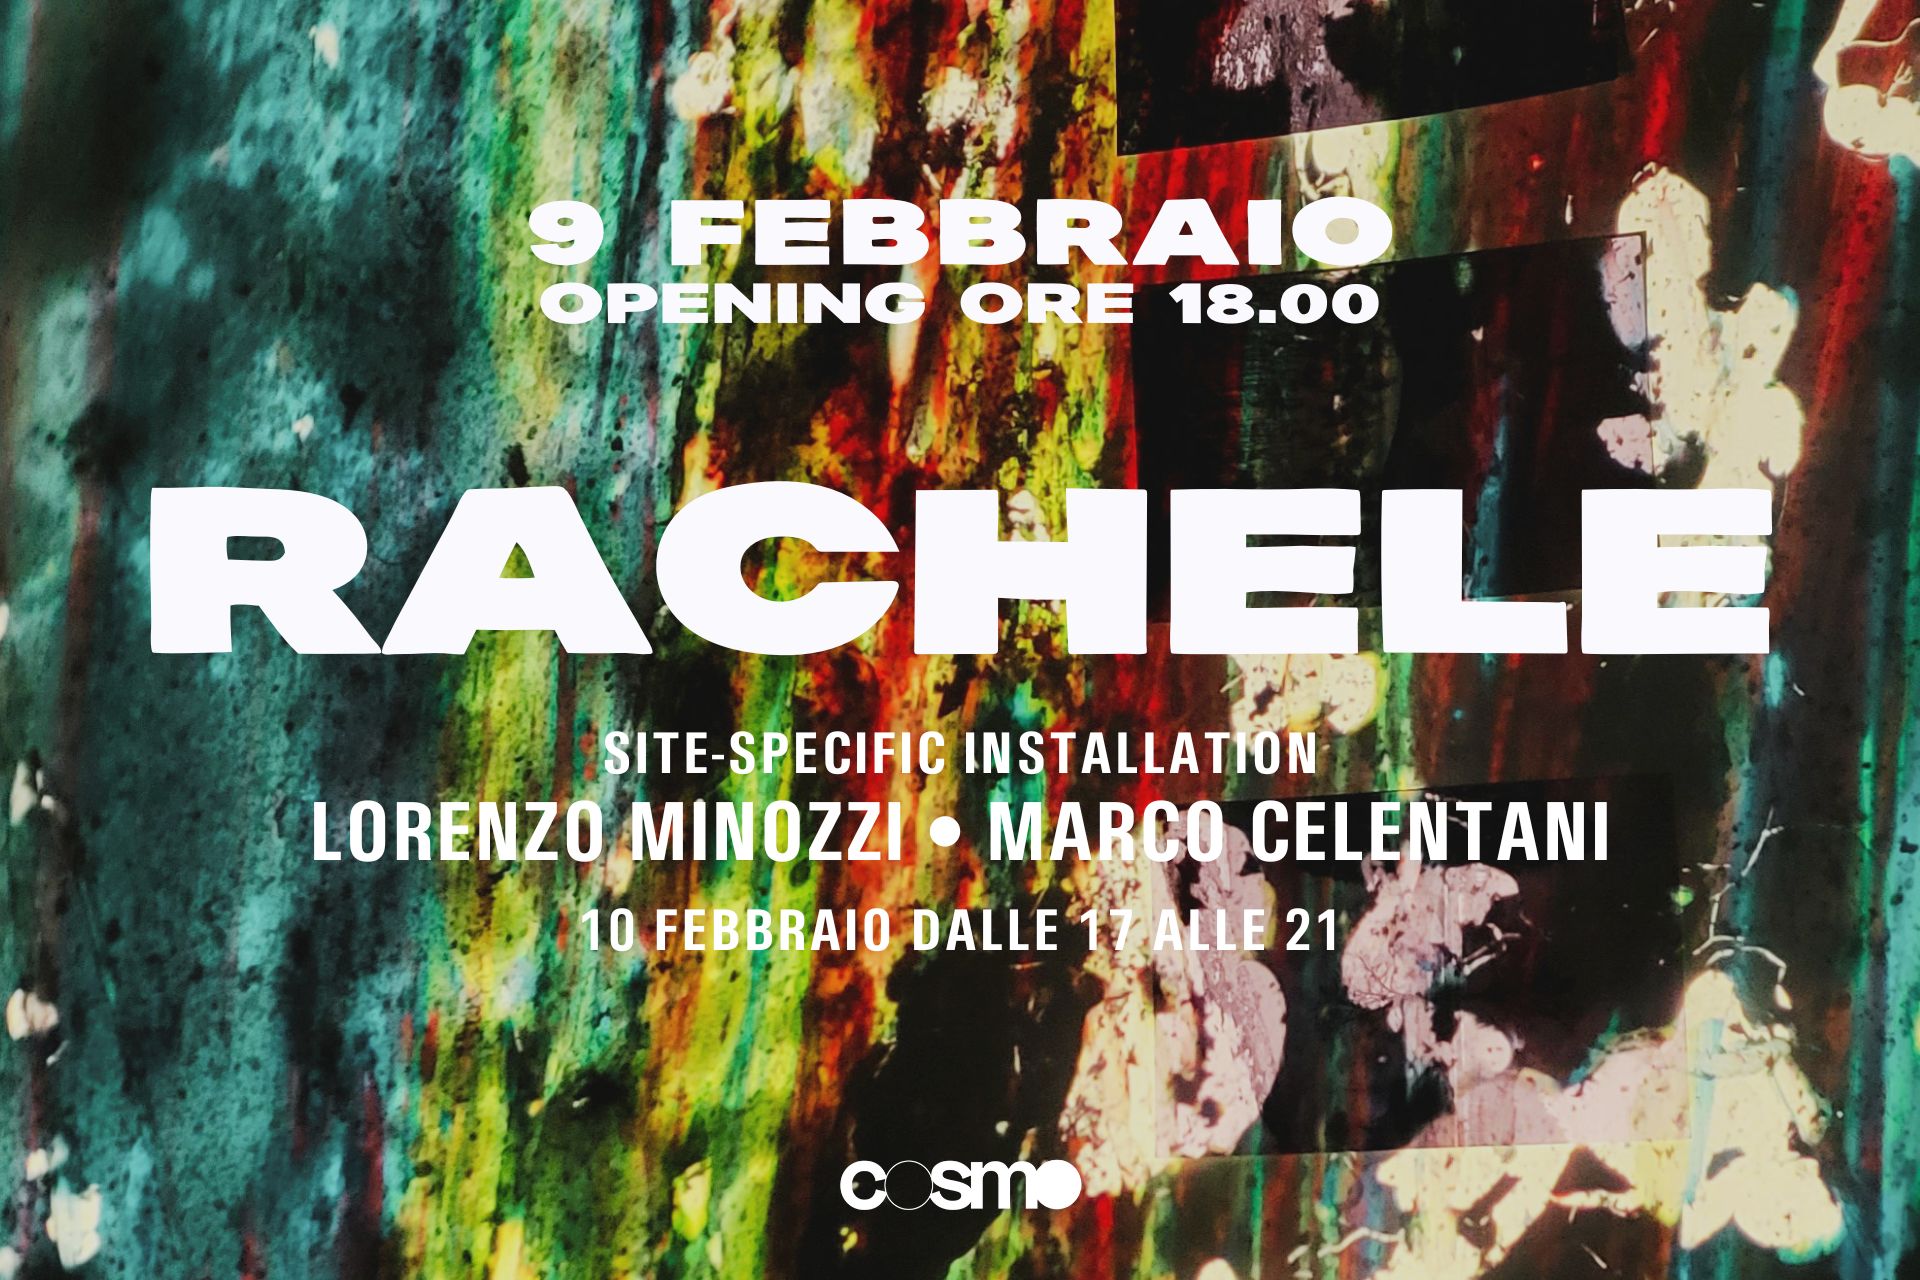 Rachele é un installazione site-specific che nasce dalla collaborazione tra il musicista Lorenzo Minozzi e l'artista visivo Marco Celentani. Cosmo Trastevere